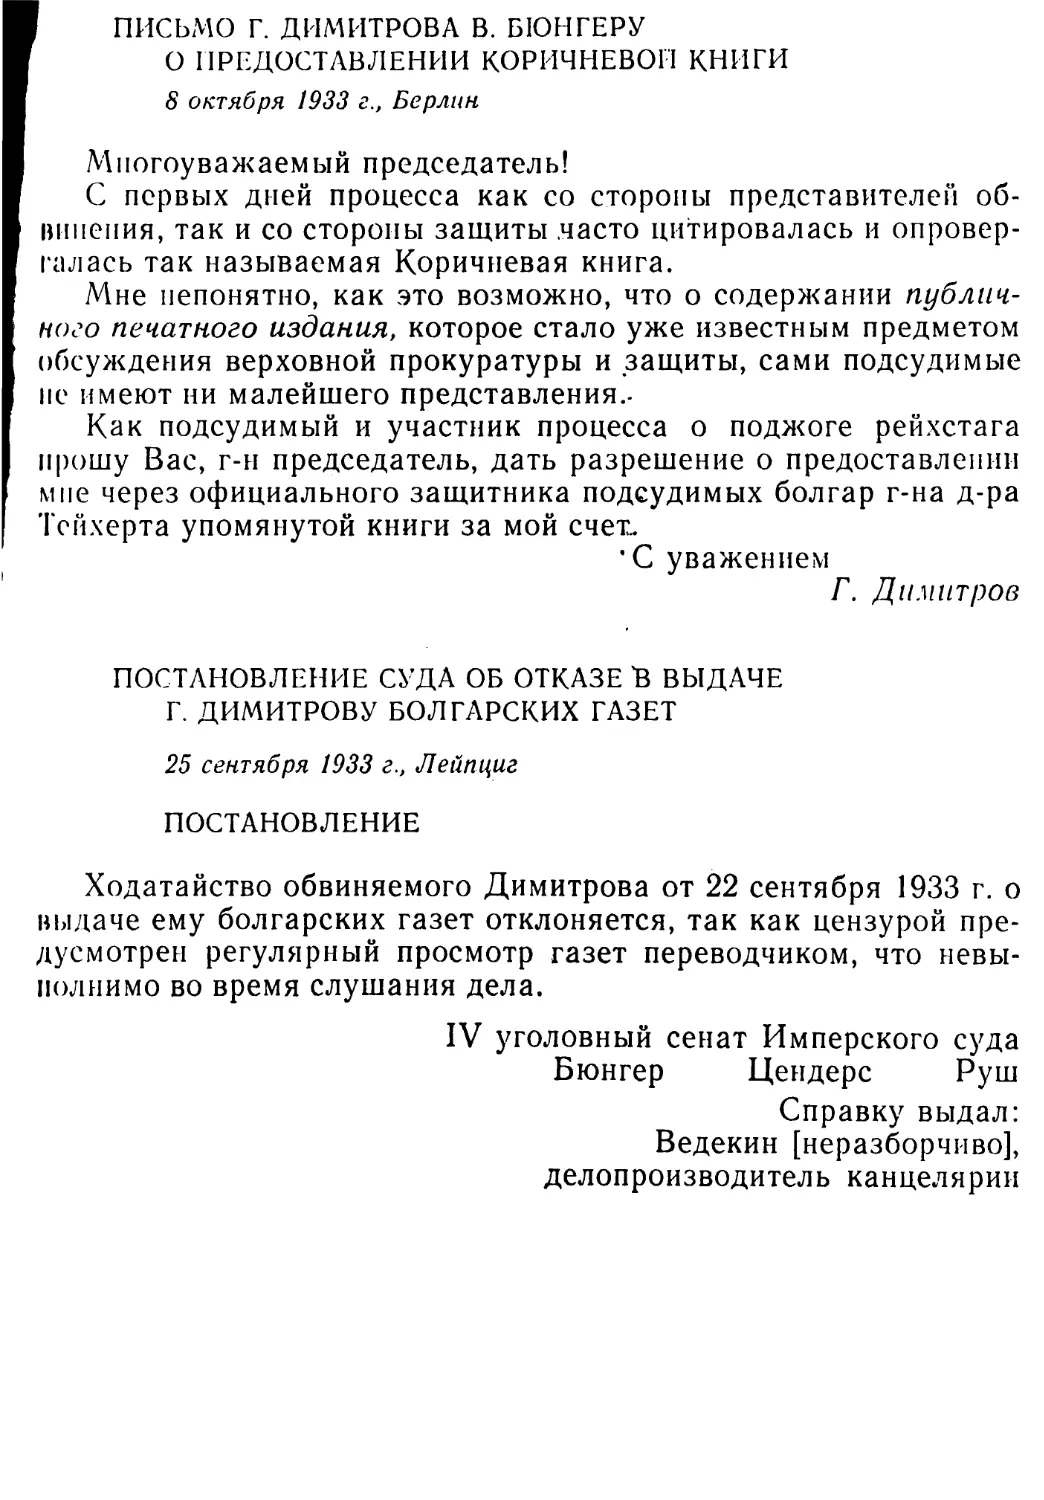 Письмо Г. Димитрова В. Бюнгеру о предоставлении Коричневой книги. 8 октября 1933 г
Постановление суда об отказе в выдаче Г. Димитрову болгарских газет. 25 сентября 1933 г